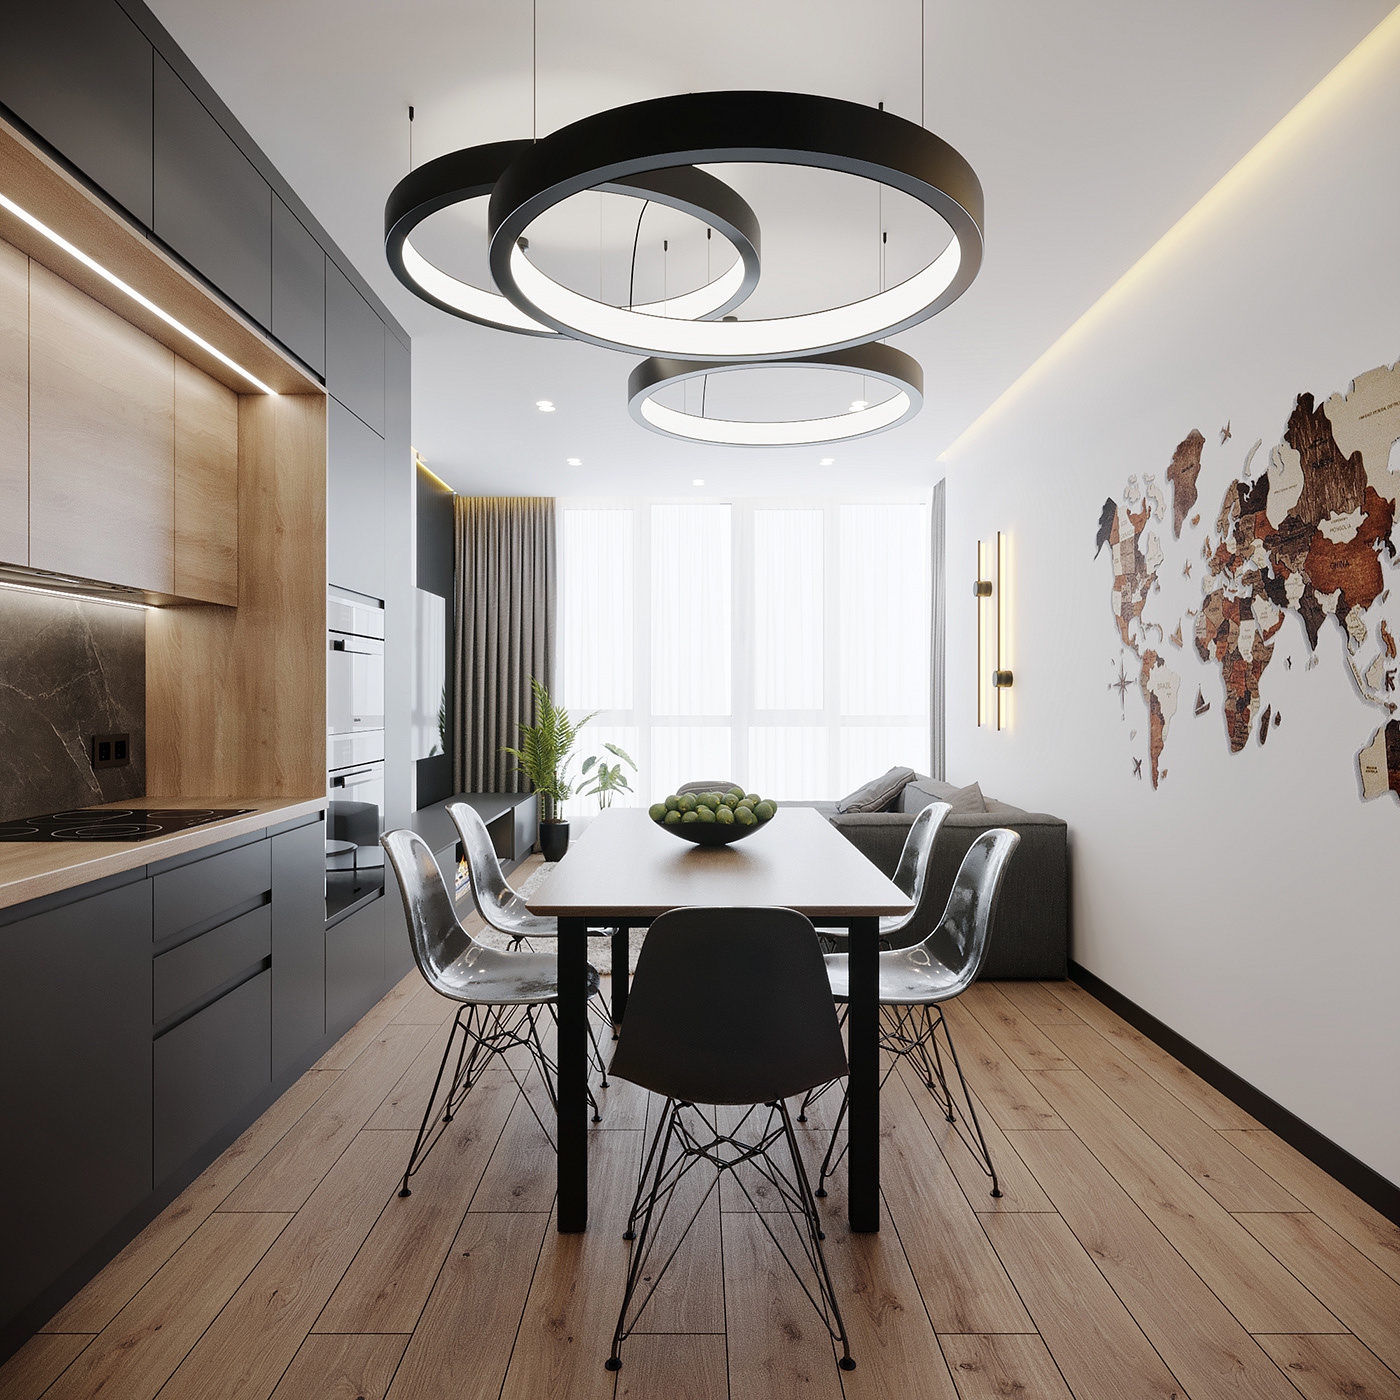 3D architecture archviz bathroom bedroom Interior interior design  modern Render visualization